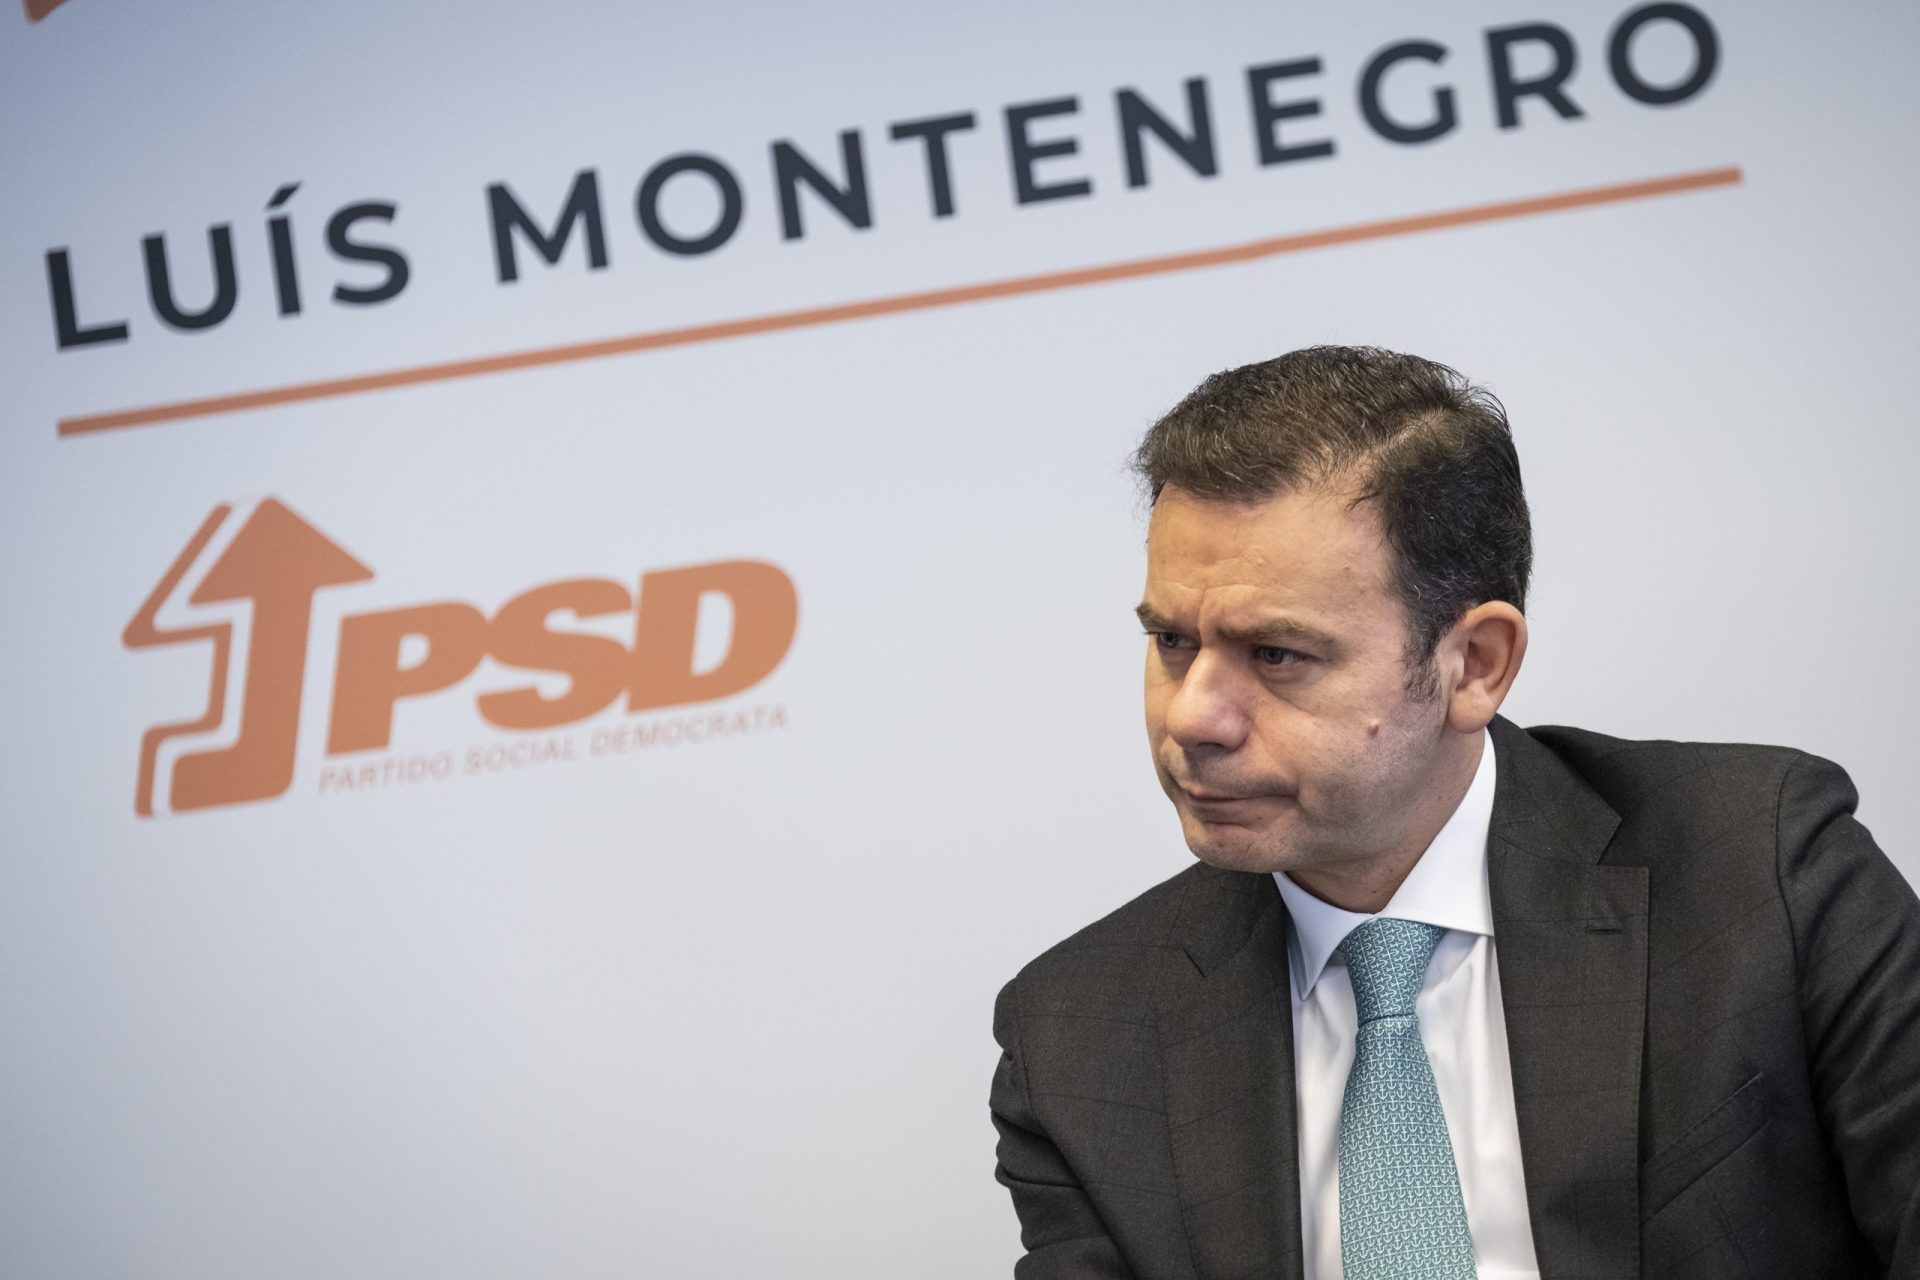 Montenegro: Processo de descentralização “tem sido um flop”